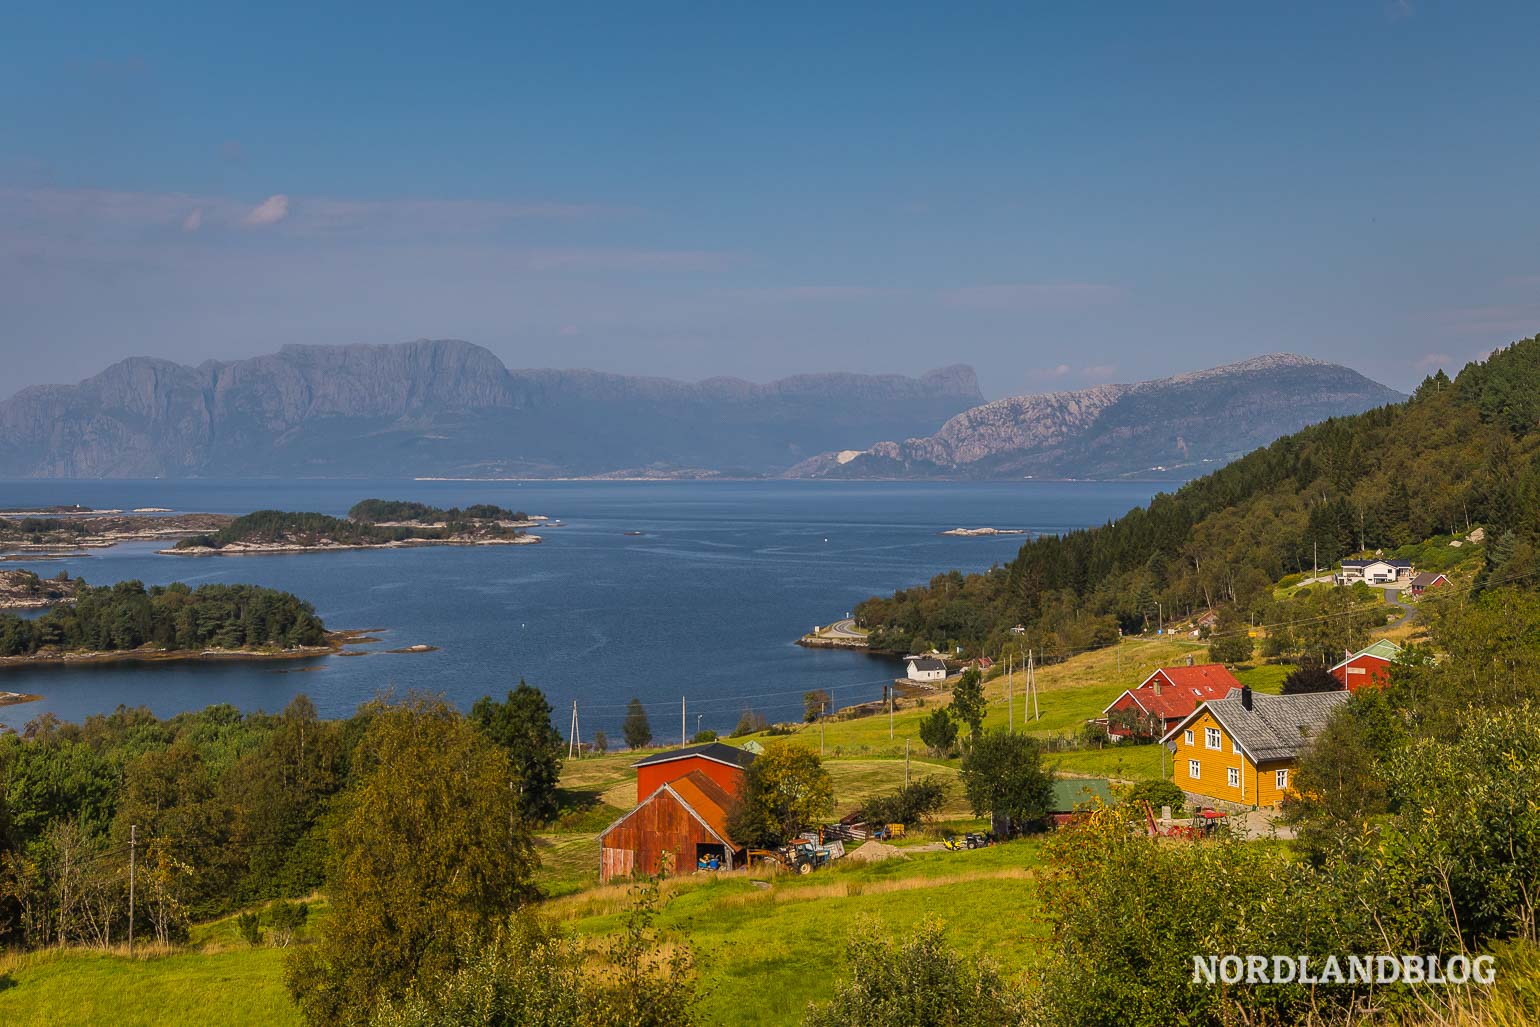 Traumhafte Landschaft unweit von Bergen in Fjordnorwegen